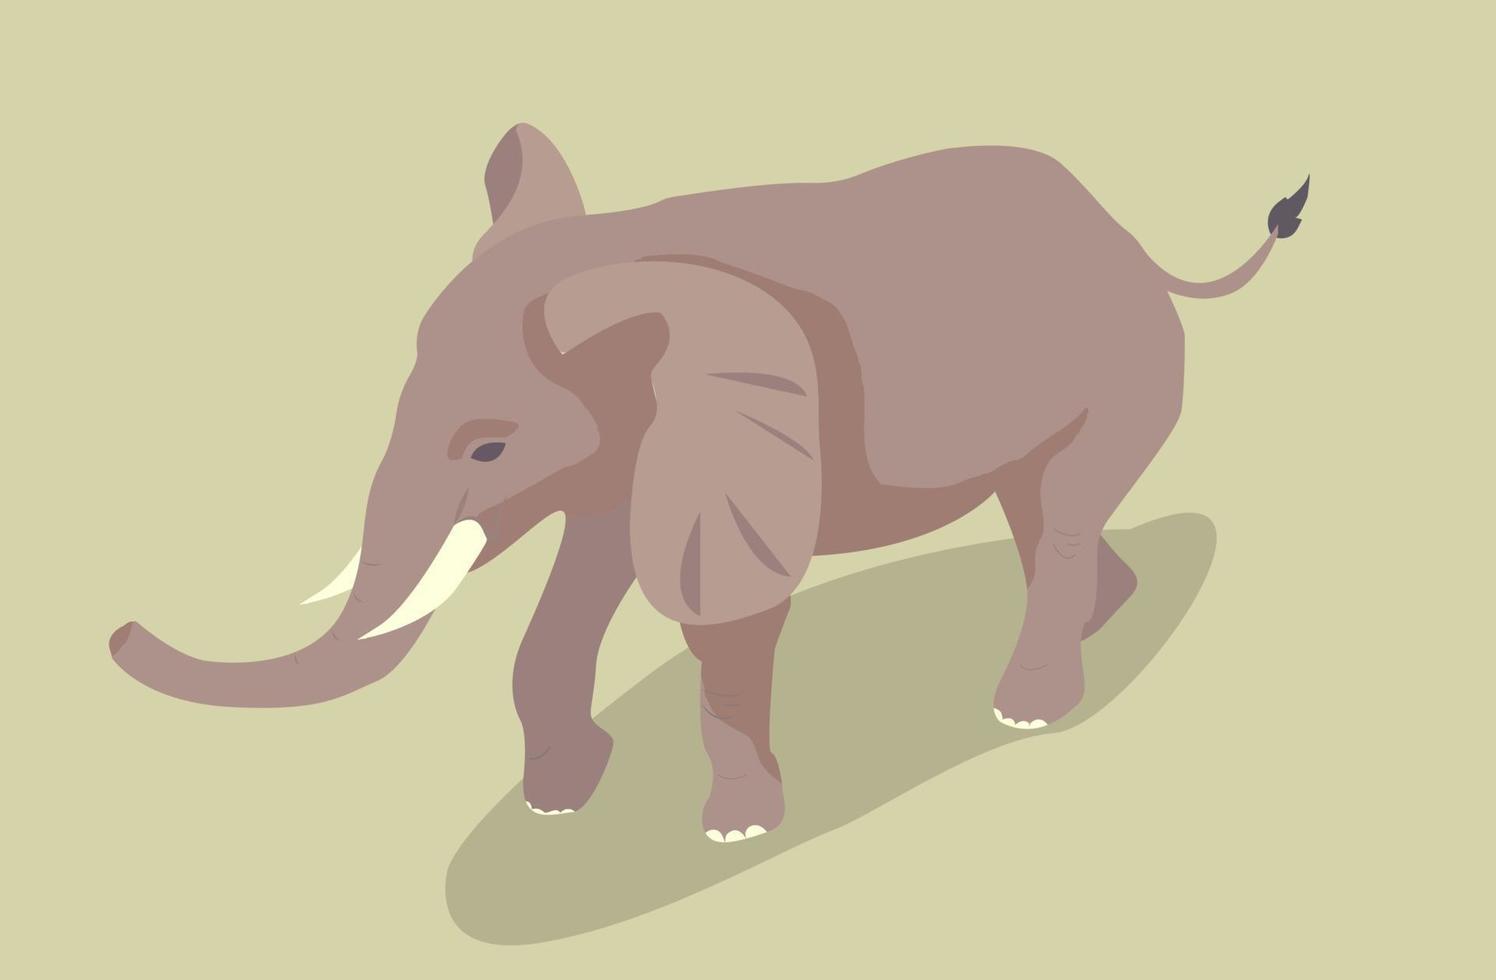 Elefant isometrisch mit Schatten vektor